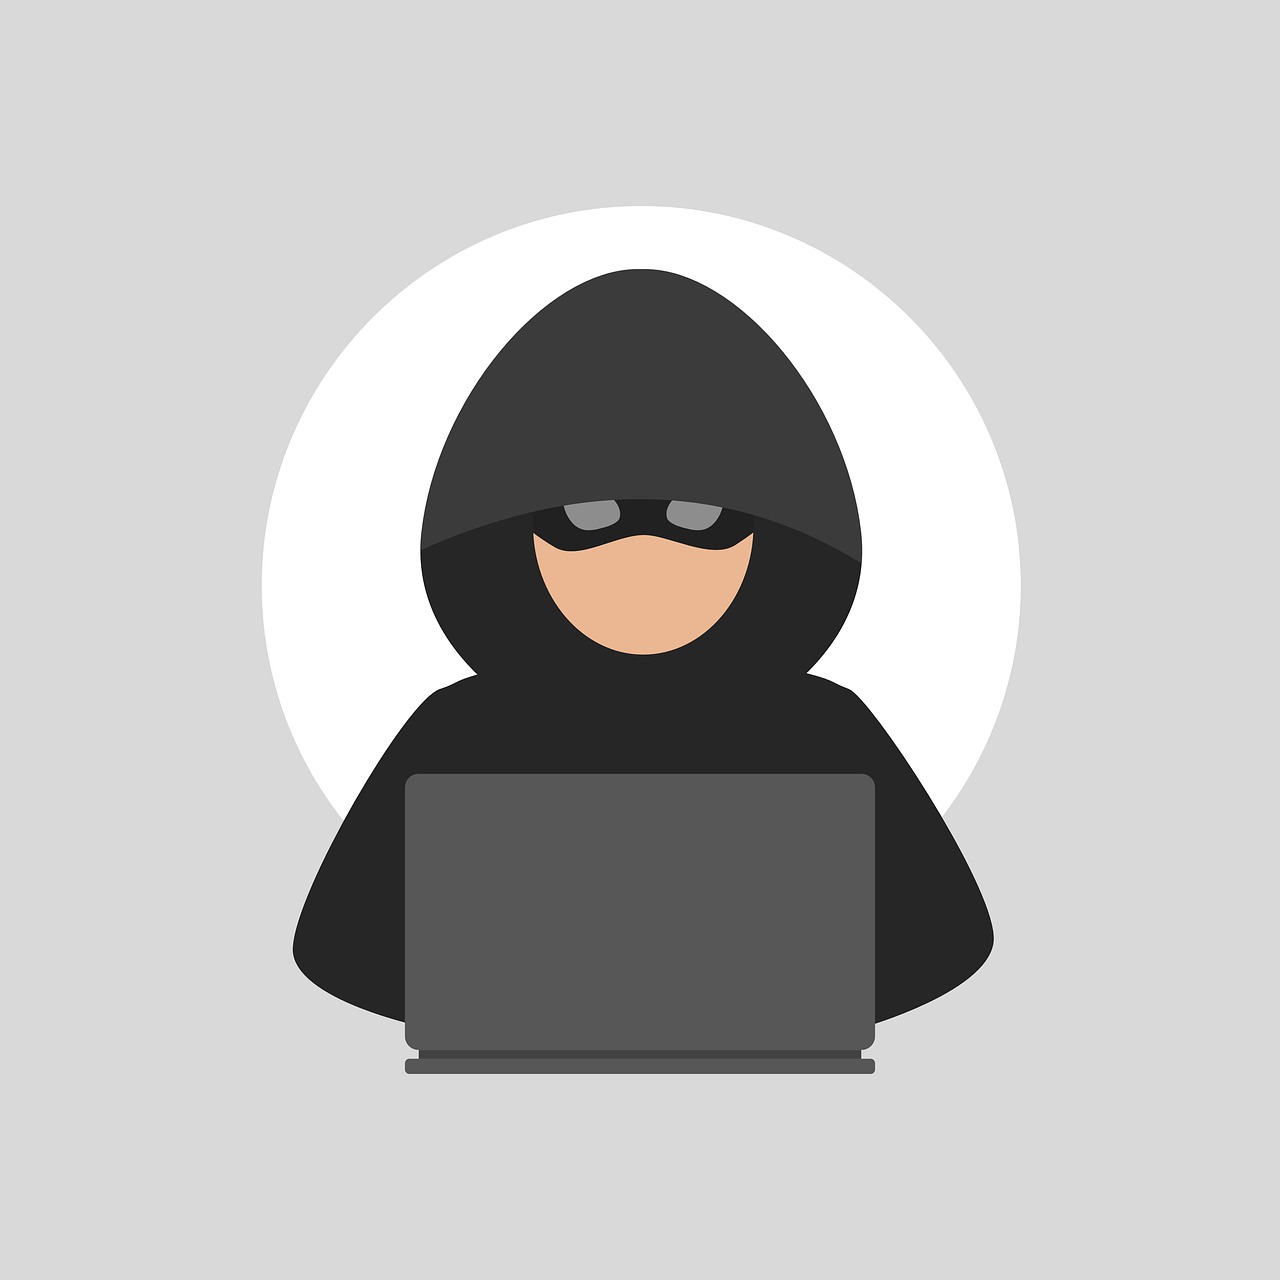 A thief using a computer.